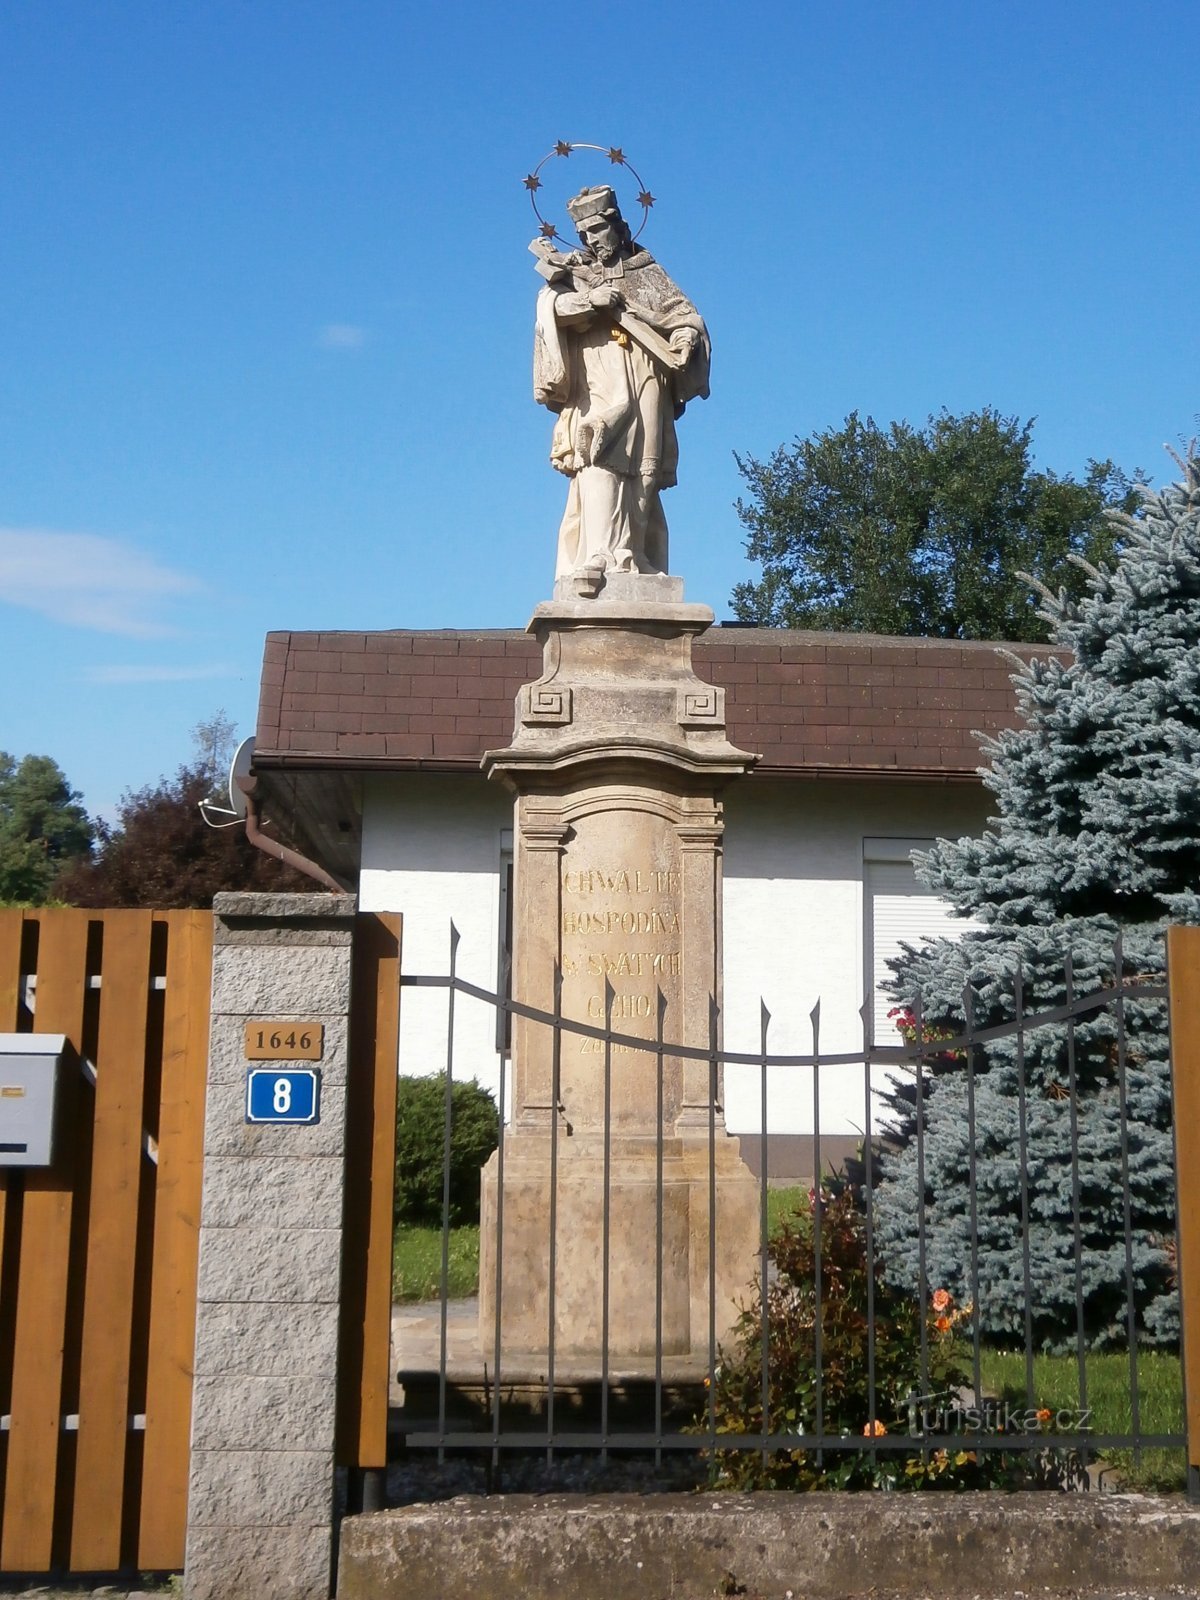 Statuia Sf. Jan Nepomucký în strada Medková (Hradec Králové, 29.7.2017)